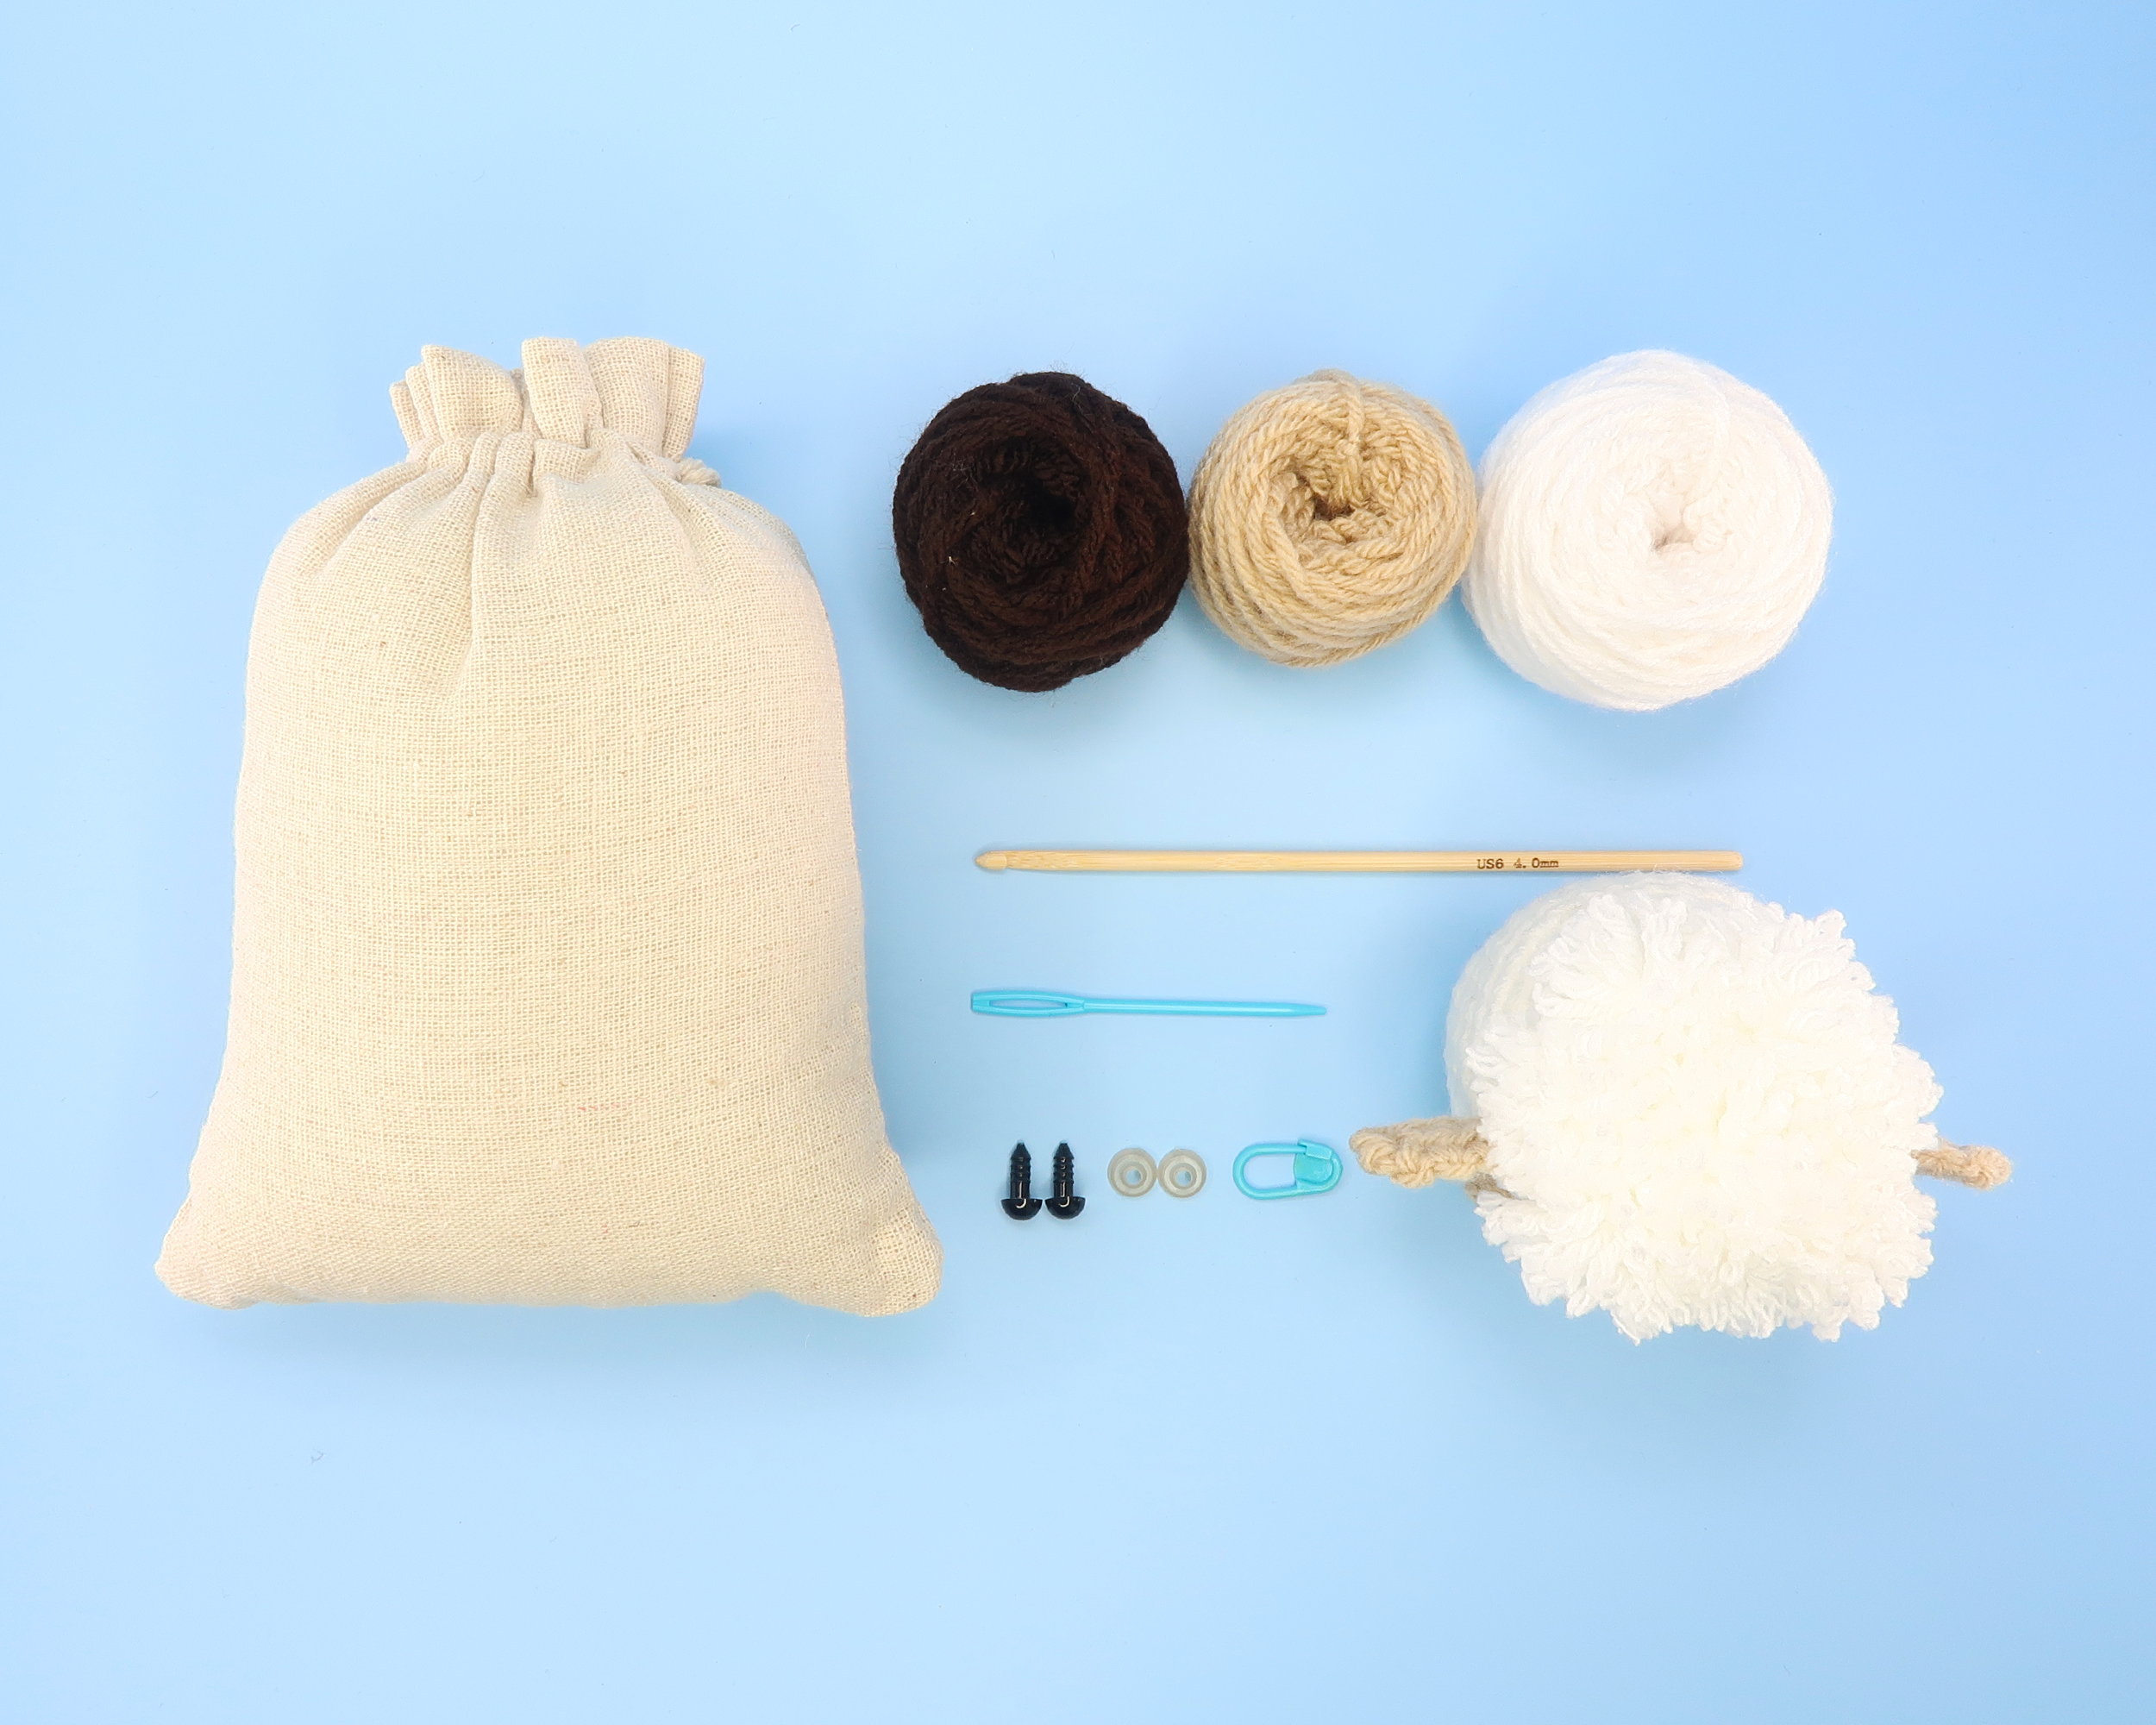 BEGINNER CROCHET KIT Amigurumi Cow, Easy Starter Crochet Kit